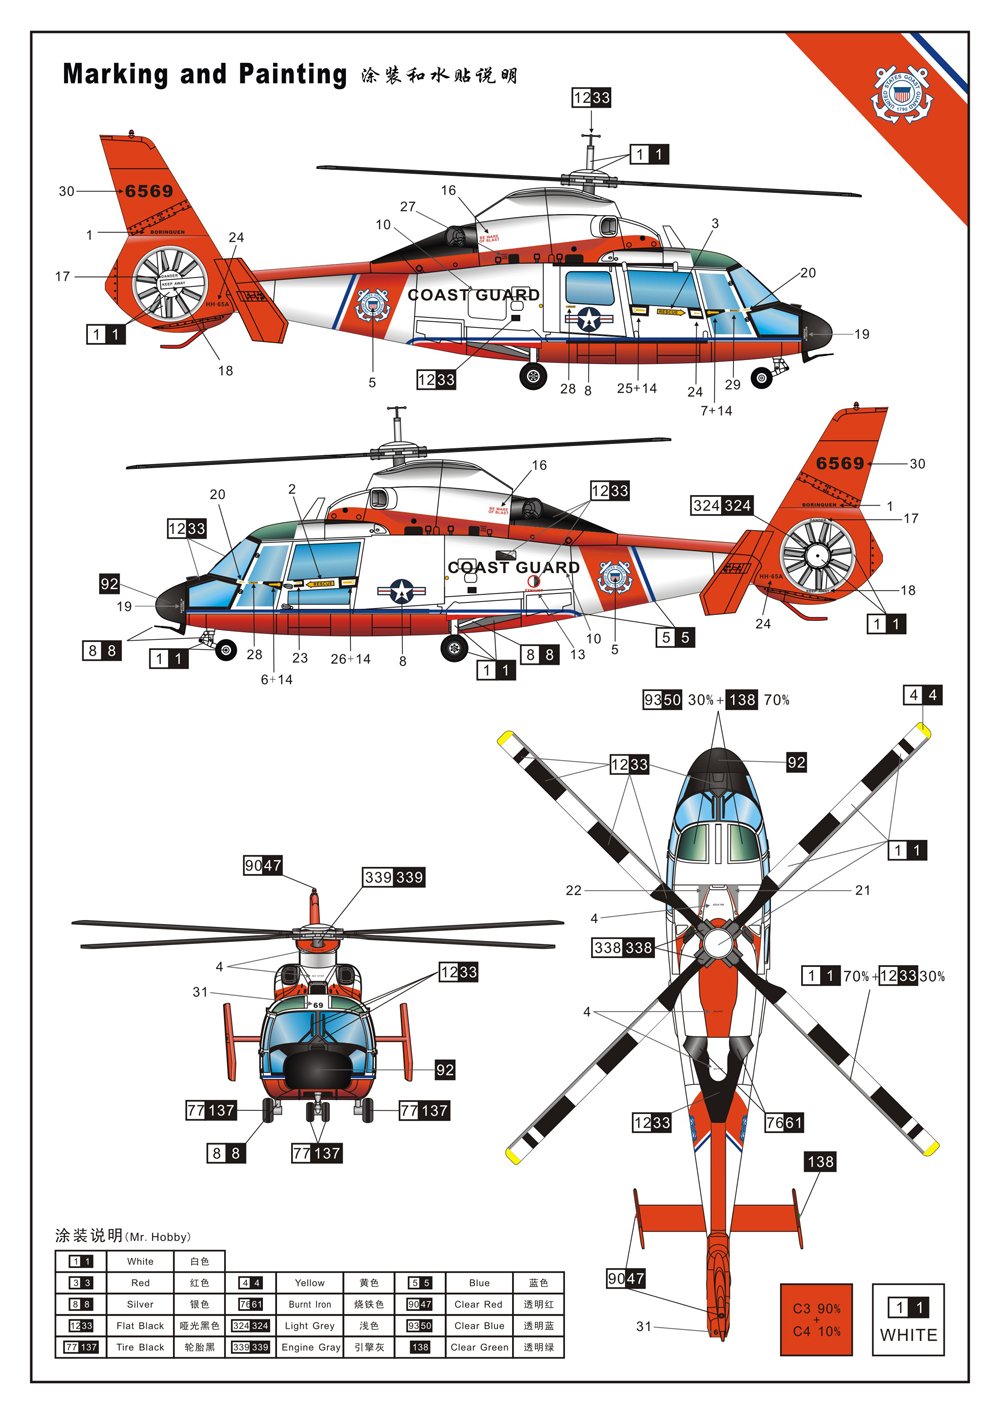 1/72 现代美国海岸警卫队 HH-65A/B 海豚直升机 - 点击图像关闭